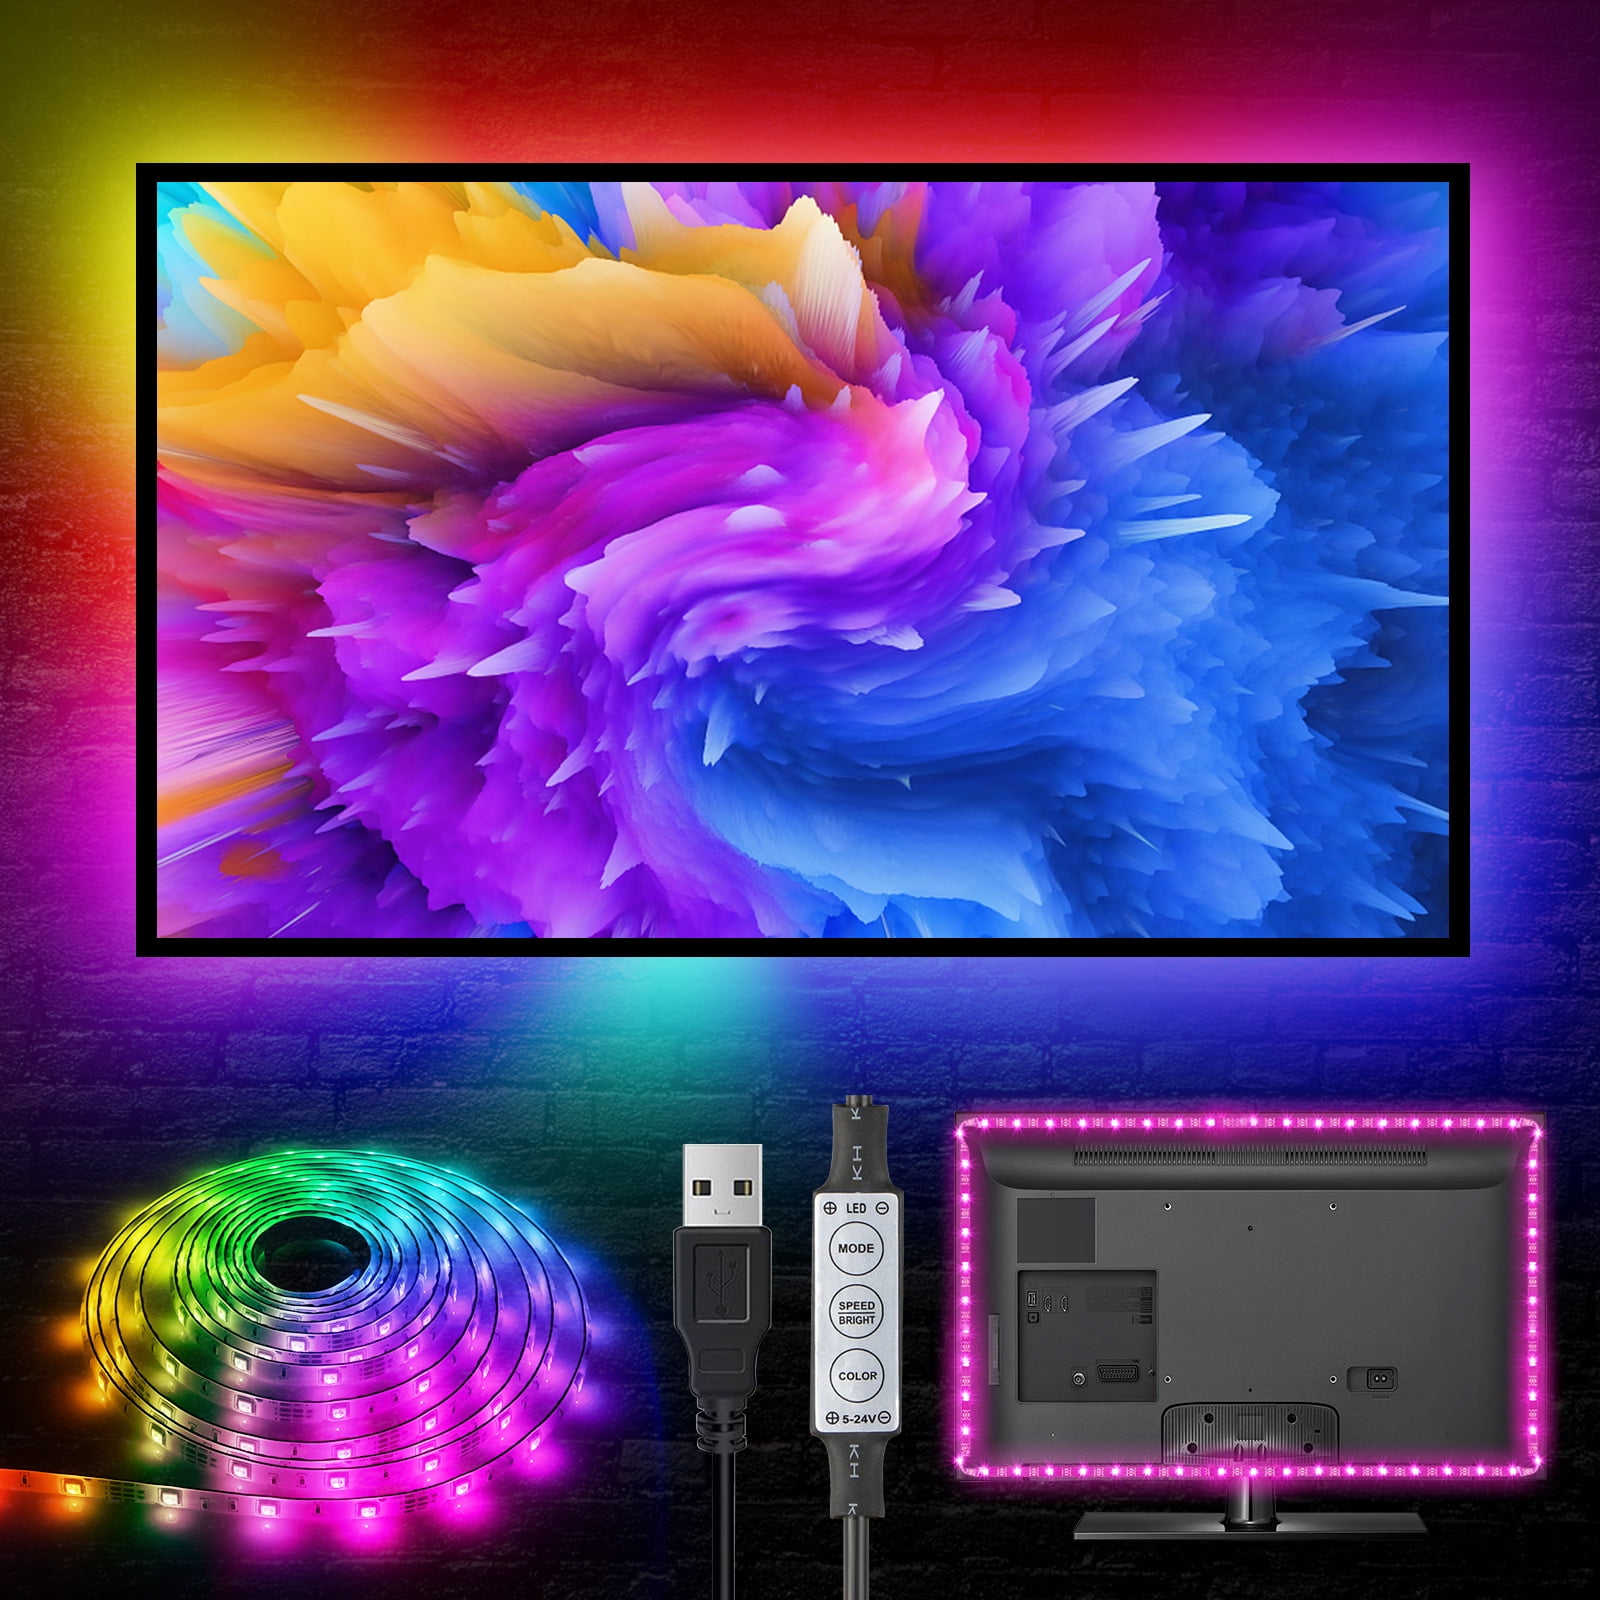 TIRA DE LED 50X50 RGB USB PARA TV 3M LED-4701